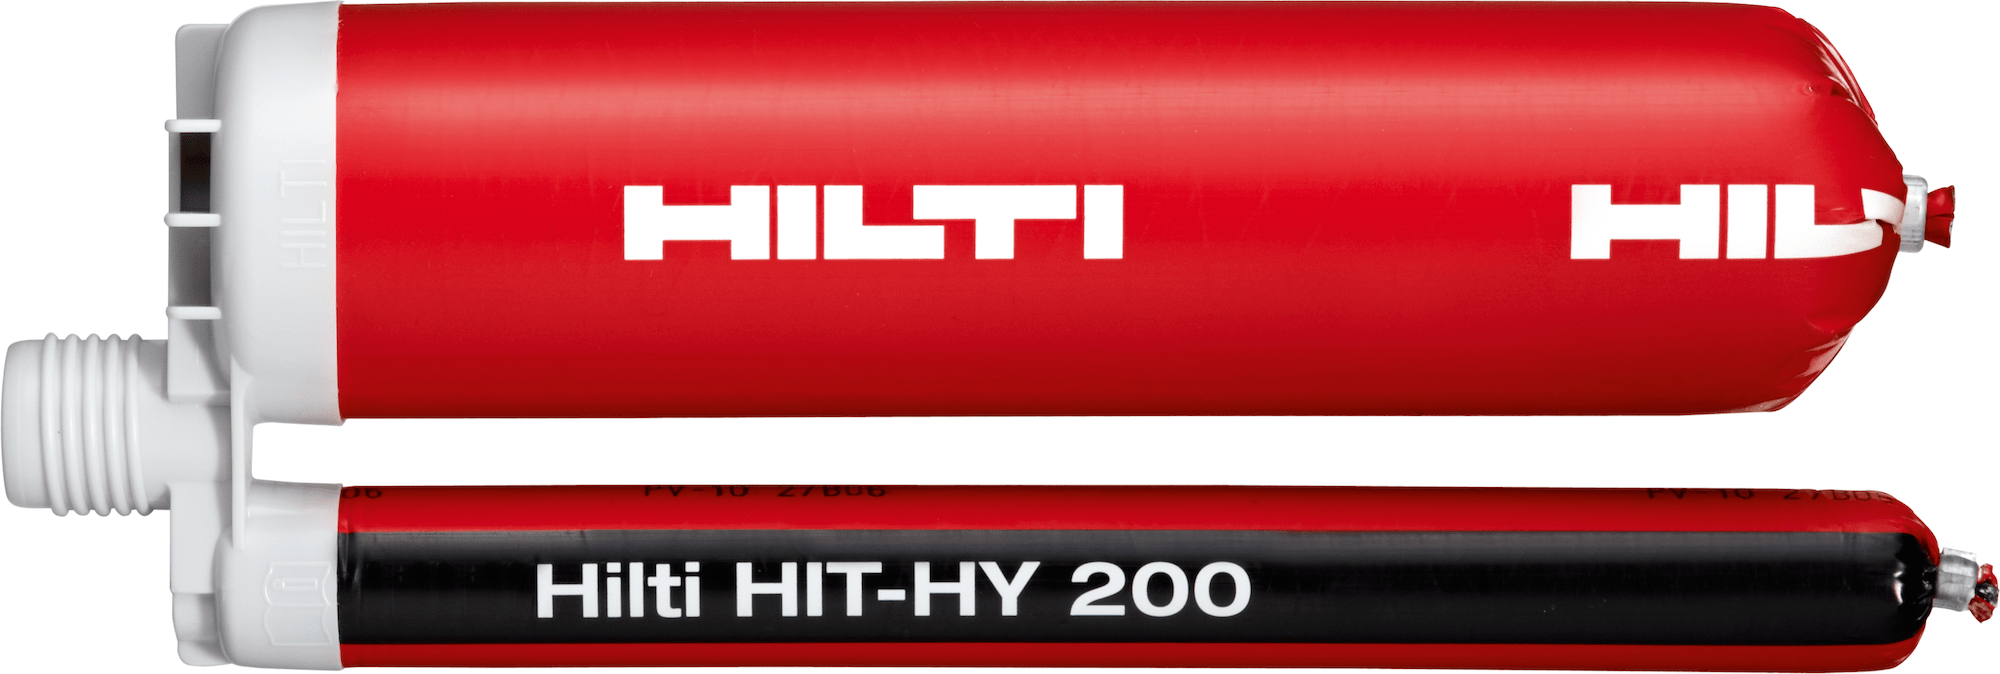 Hilti HIT-HV 200